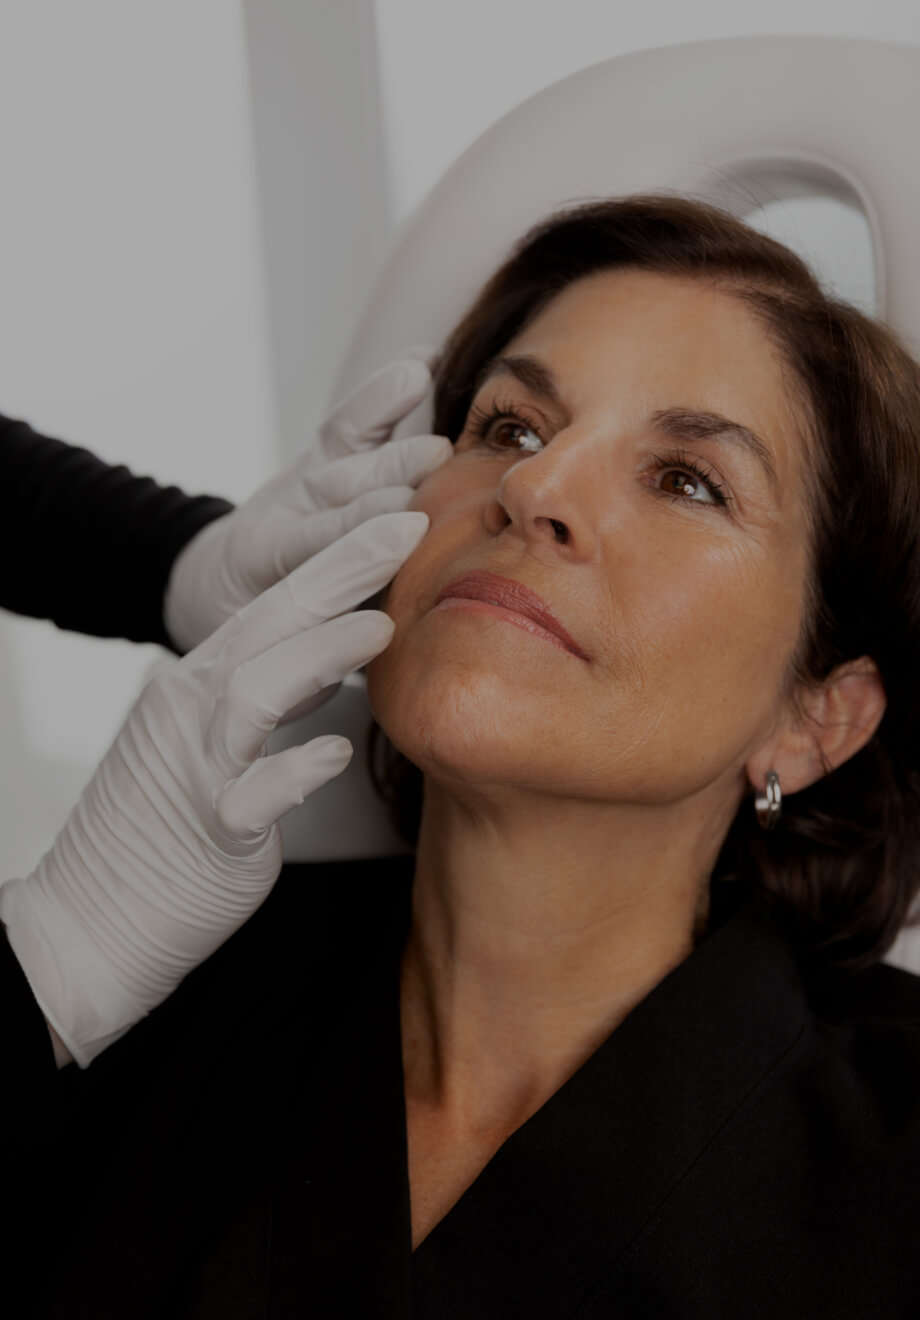 Une technicienne médico-esthétique de la Clinique Chloé pratiquant un examen visuel des manifestations d'acné d'une patiente